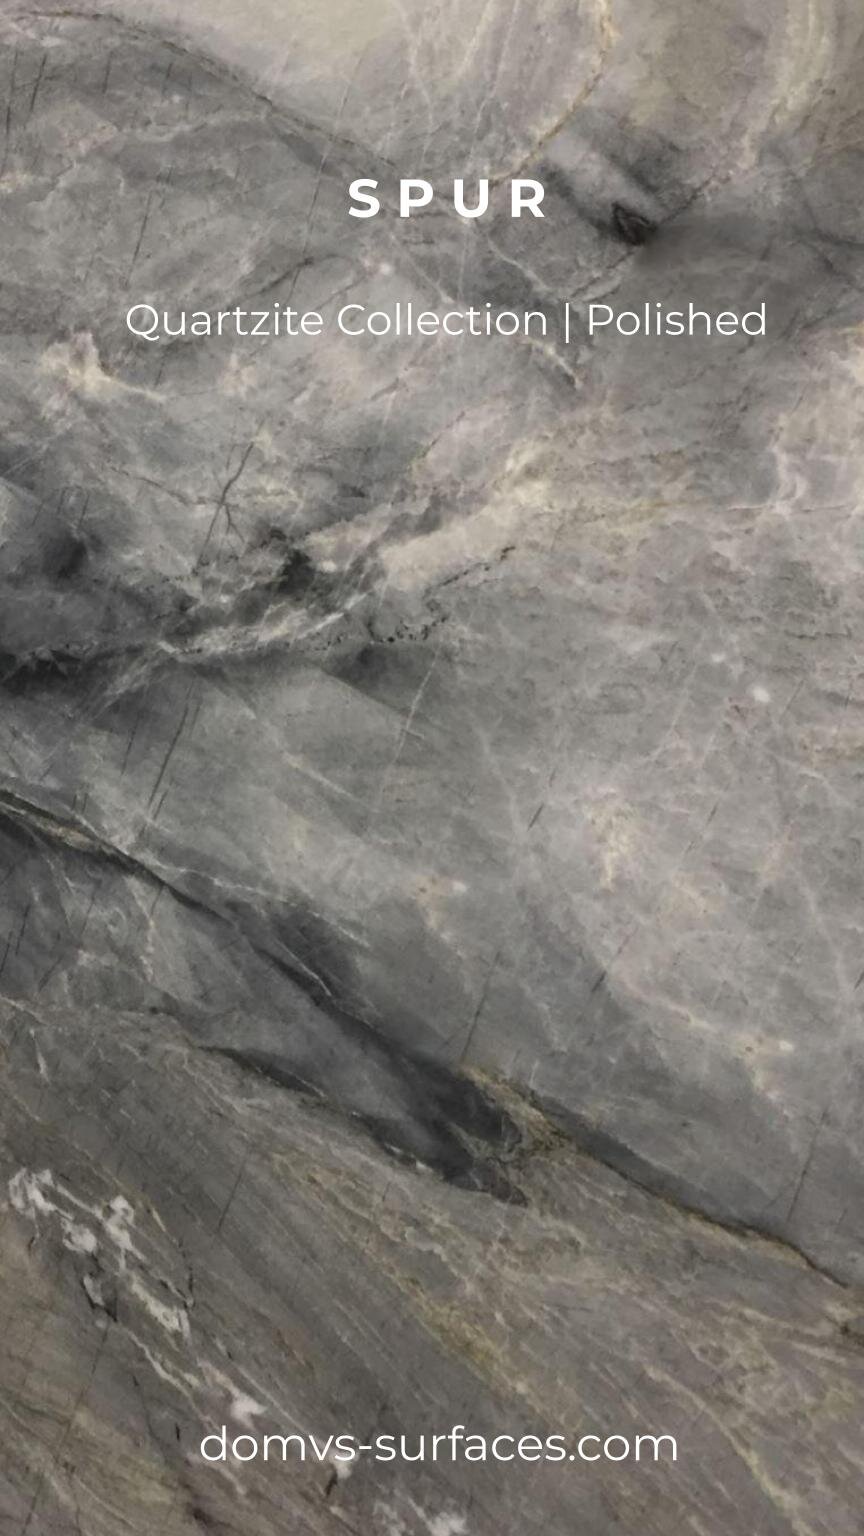 IGS Quartzite Spur.jpg